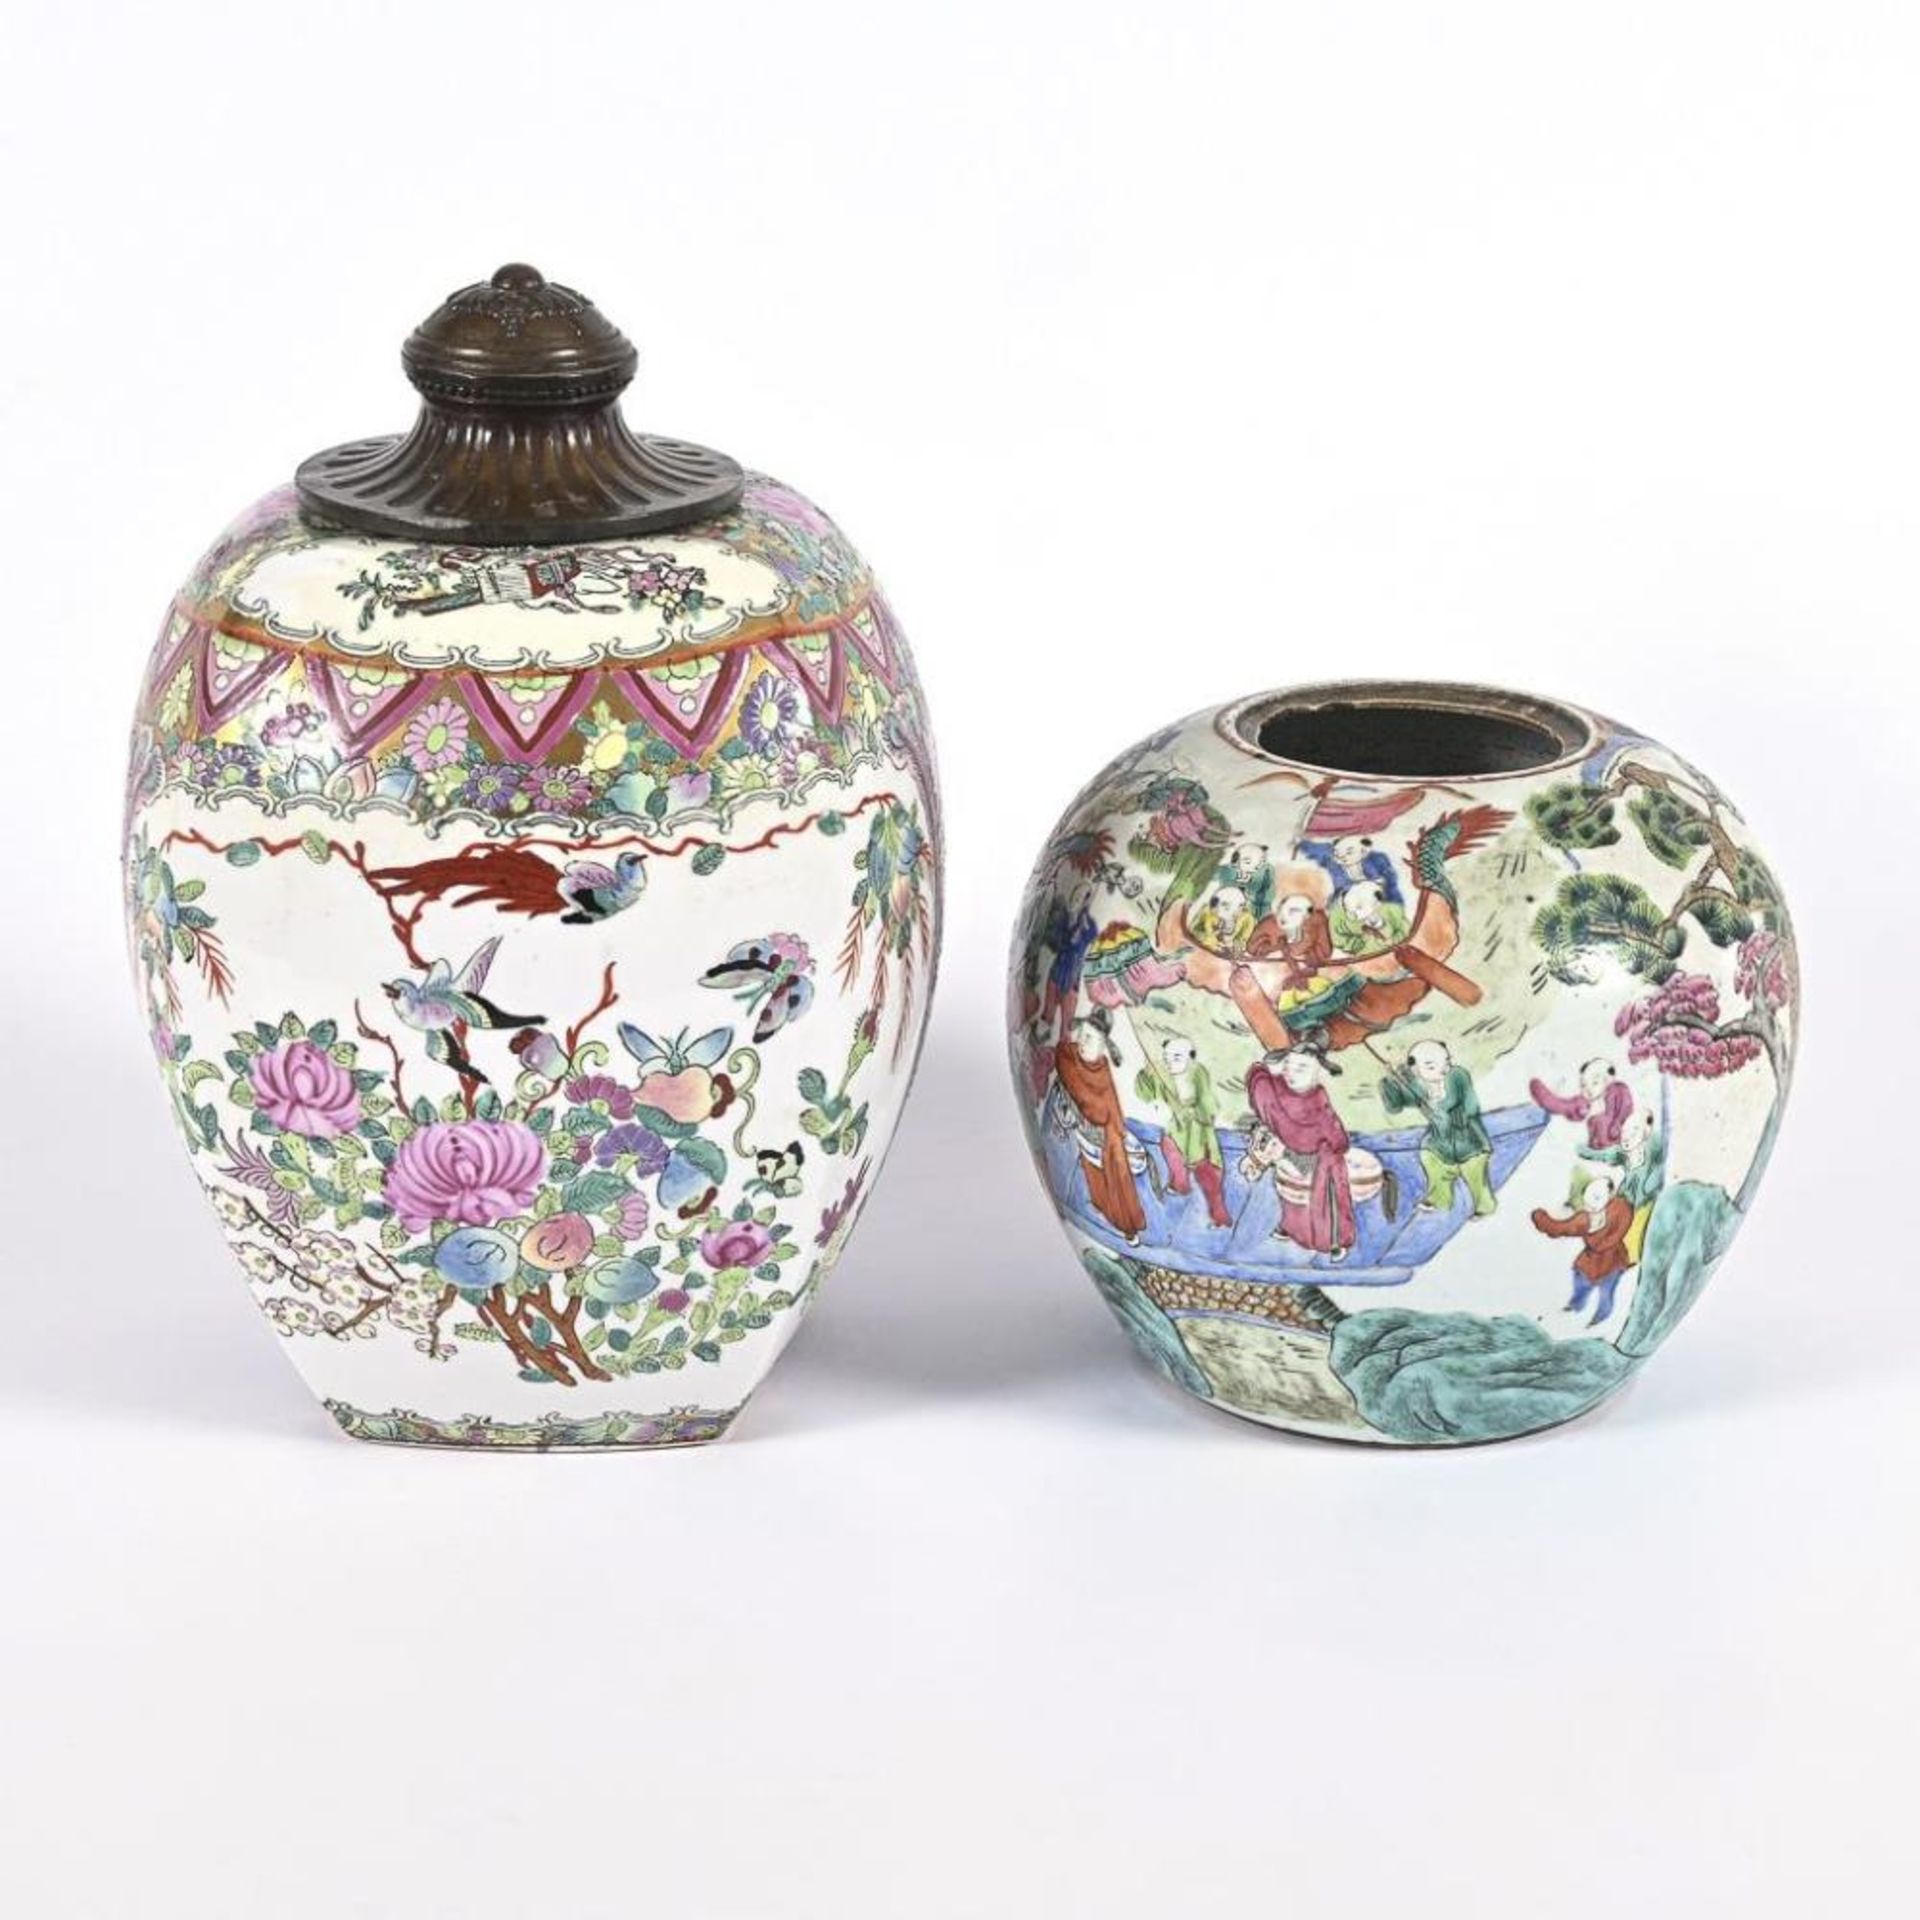 2 asiatische Vasen mit reicher Bemalung. - Bild 2 aus 5